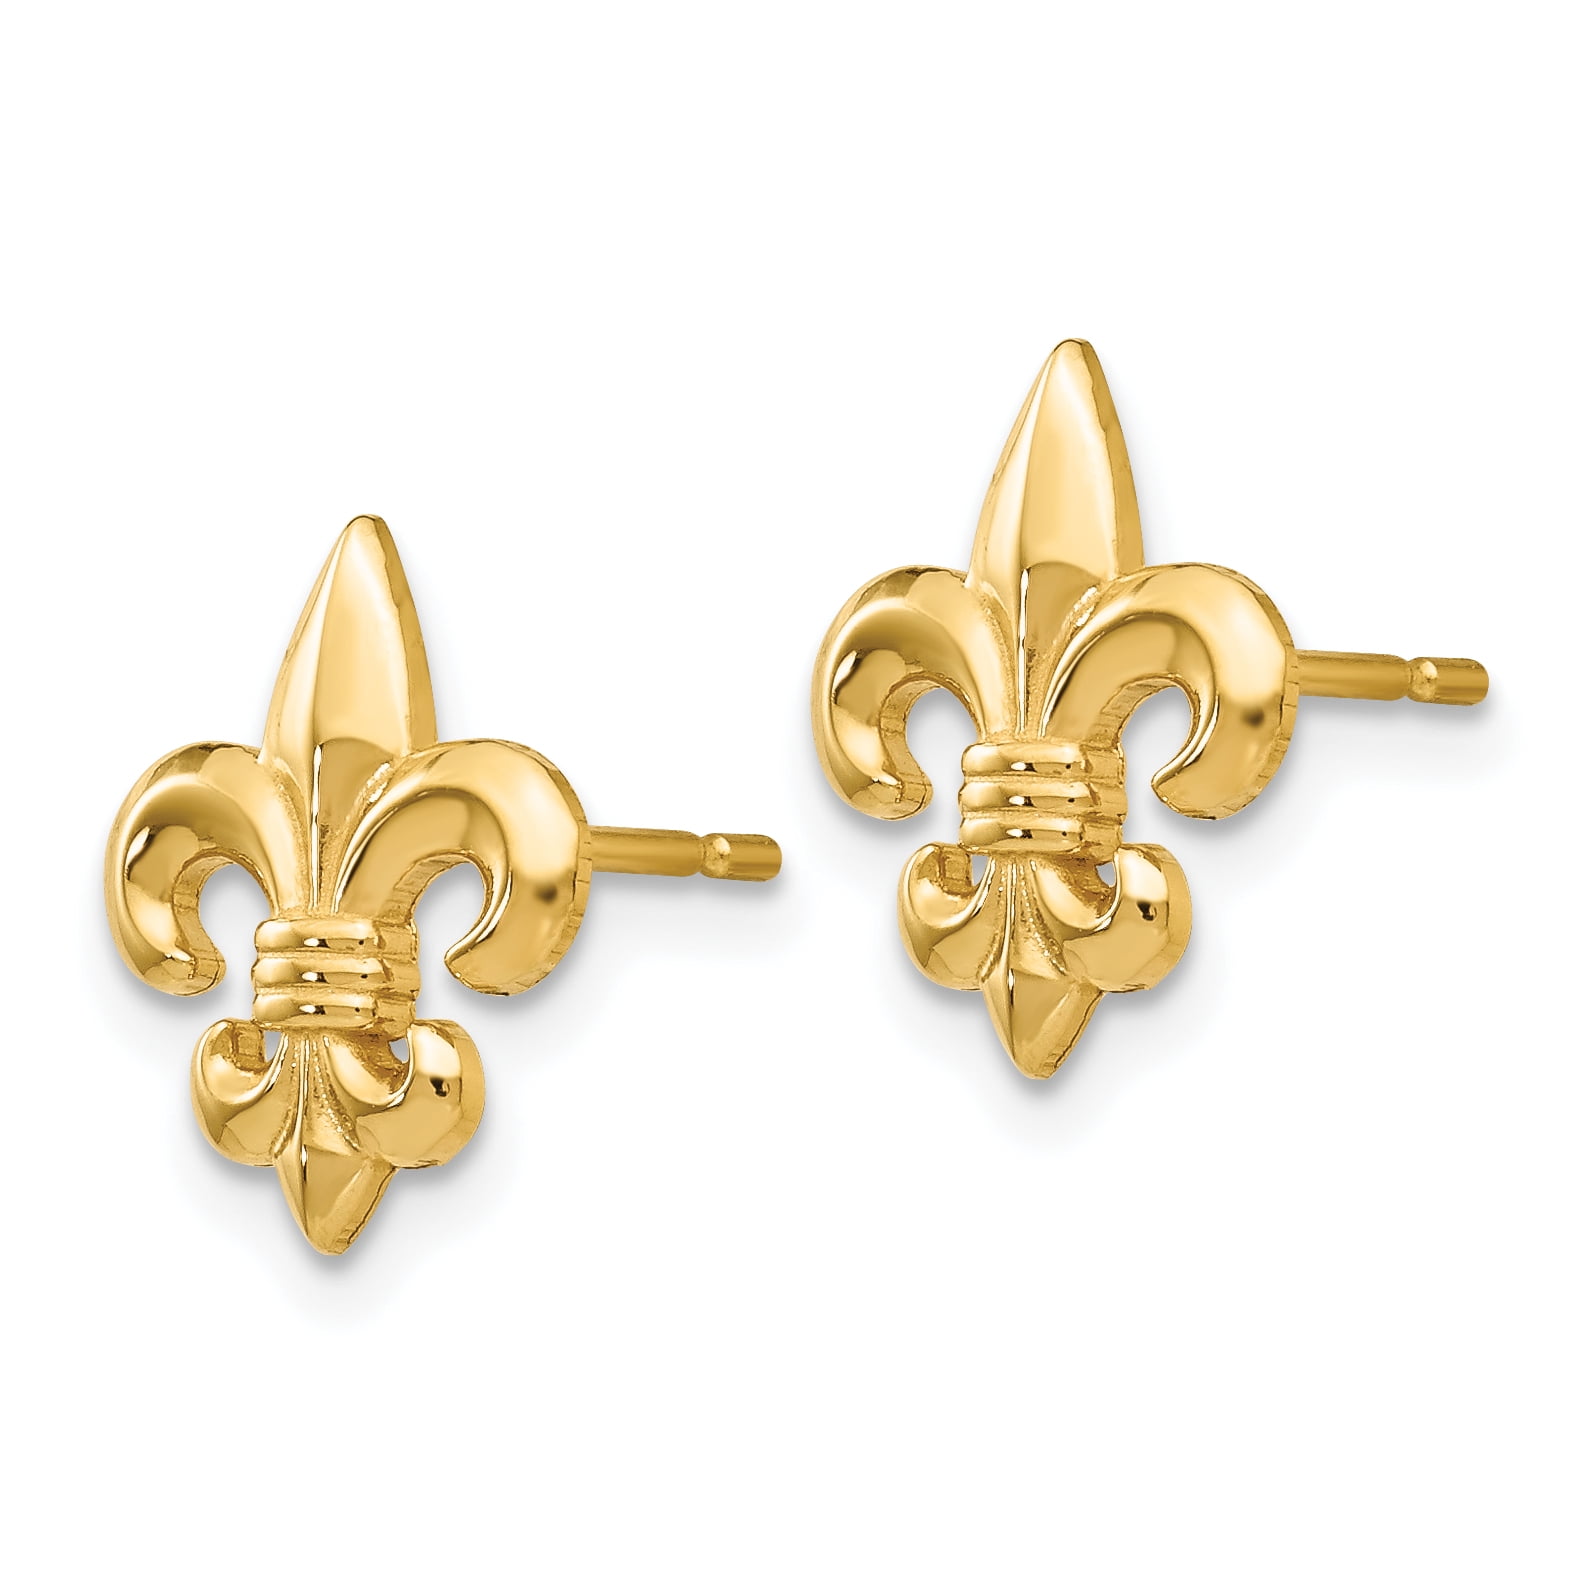 L- 15 mm, W- 11 mm 14k Yellow Gold Small Fleur-De-Lis Earring for Women 